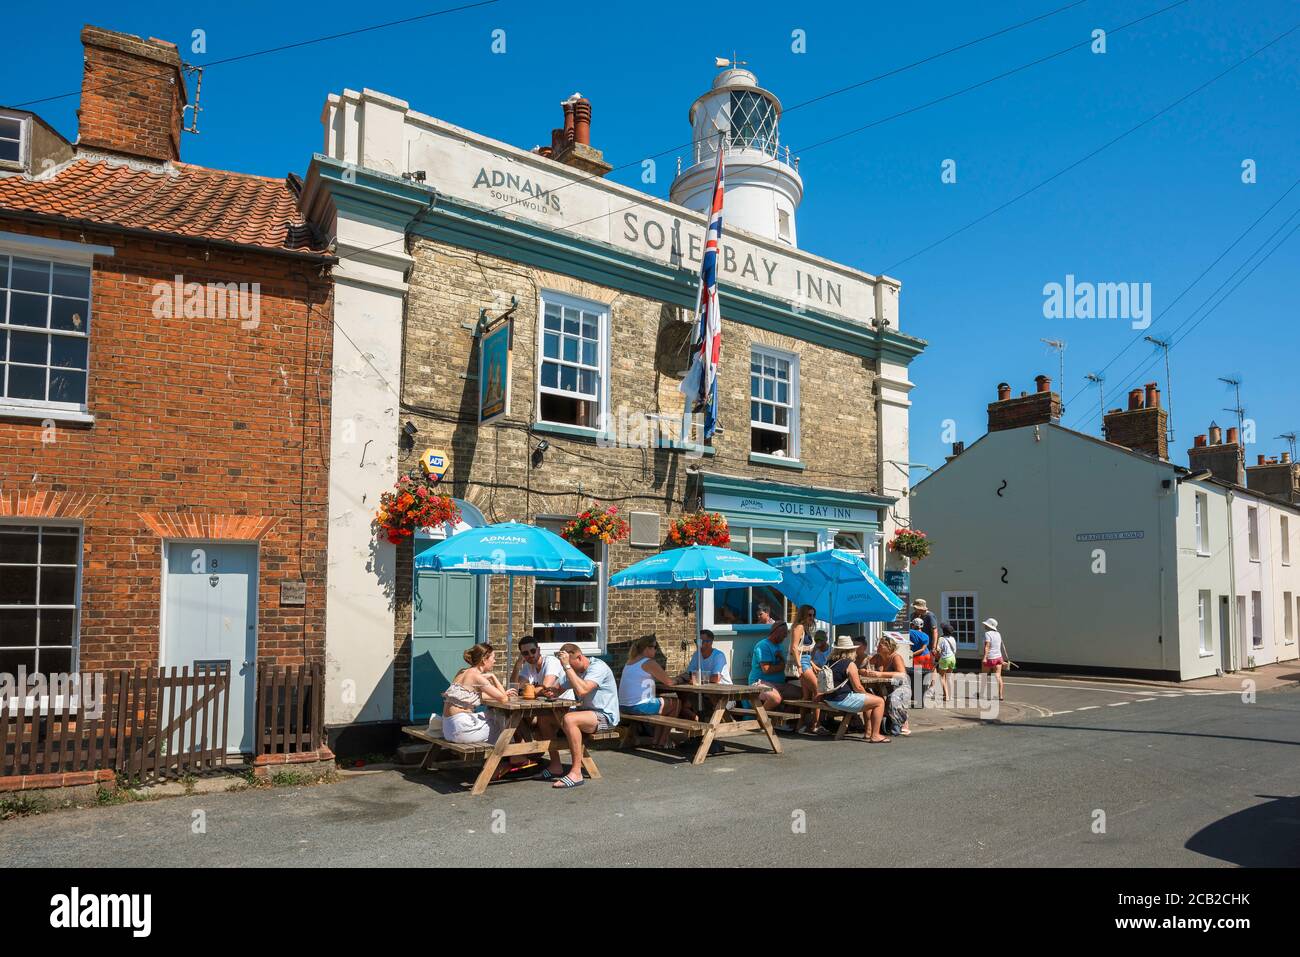 Southwold Suffolk, vista en verano de la gente bebiendo fuera de la casa pública de Sole Bay Inn en la ciudad costera de Southwold, Suffolk, Reino Unido Foto de stock